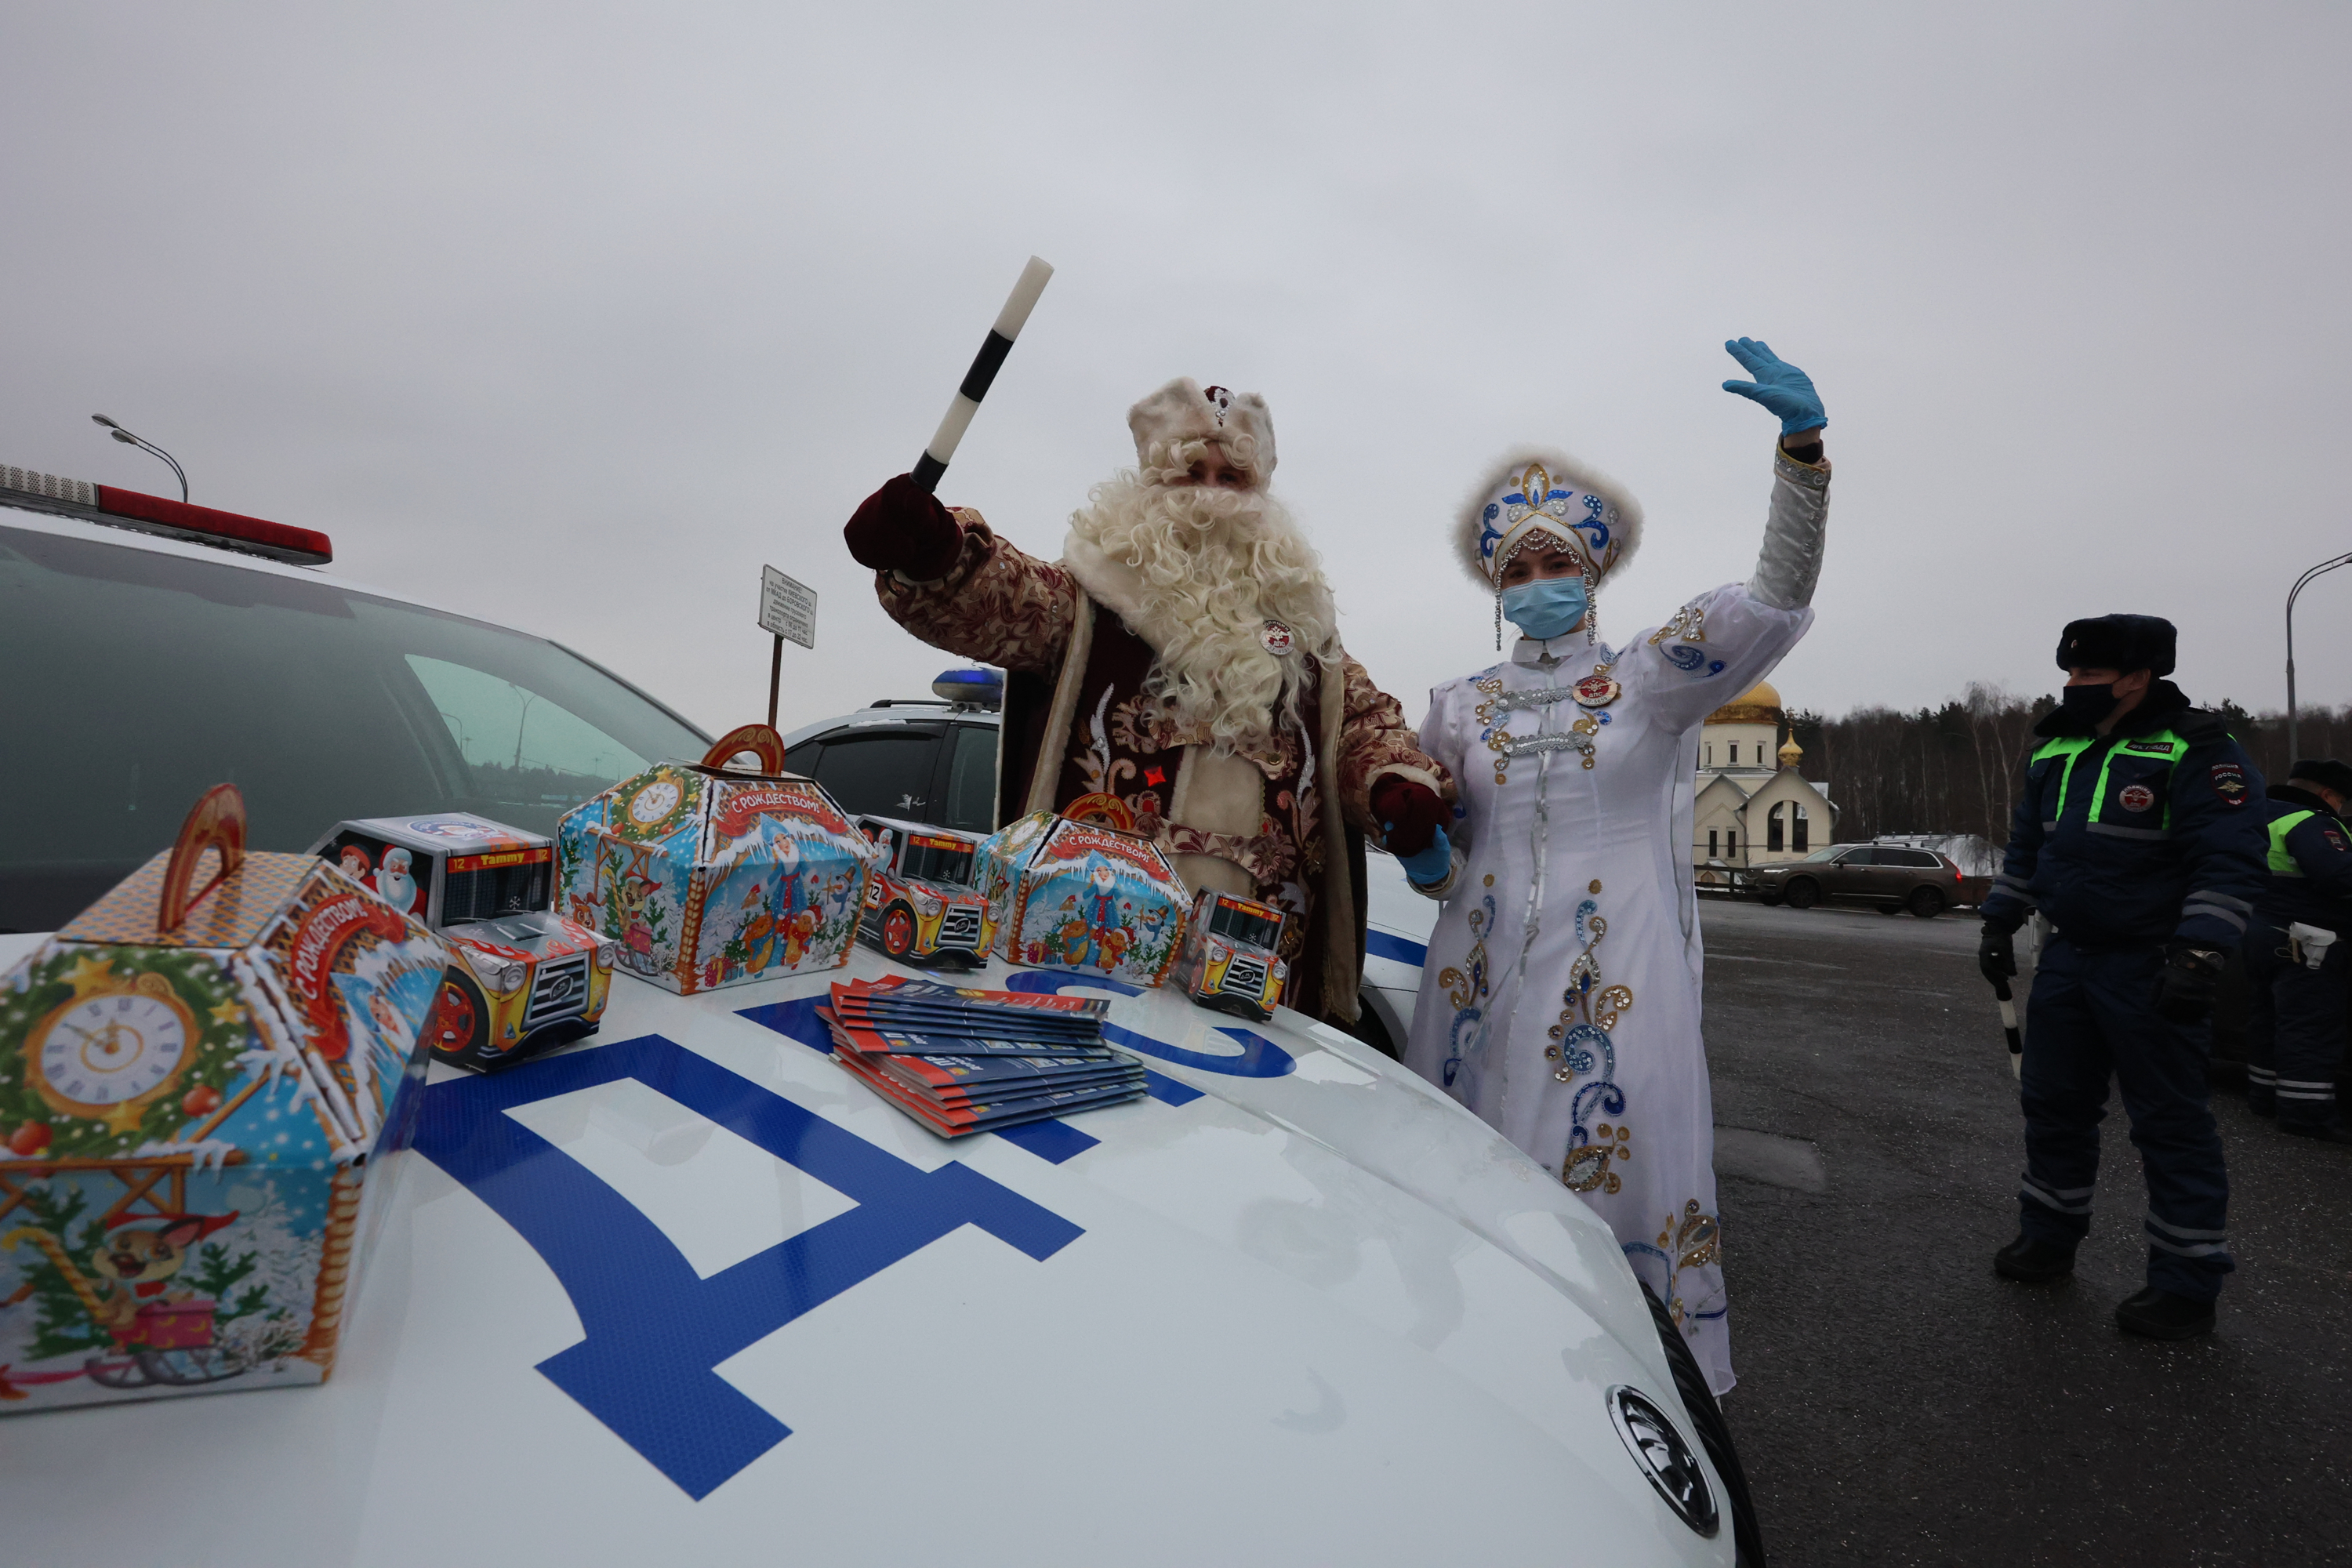 Представители Министерства внутренних дел России провели акцию «Полицейский Дед Мороз». Фото предоставили сотрудники администрации